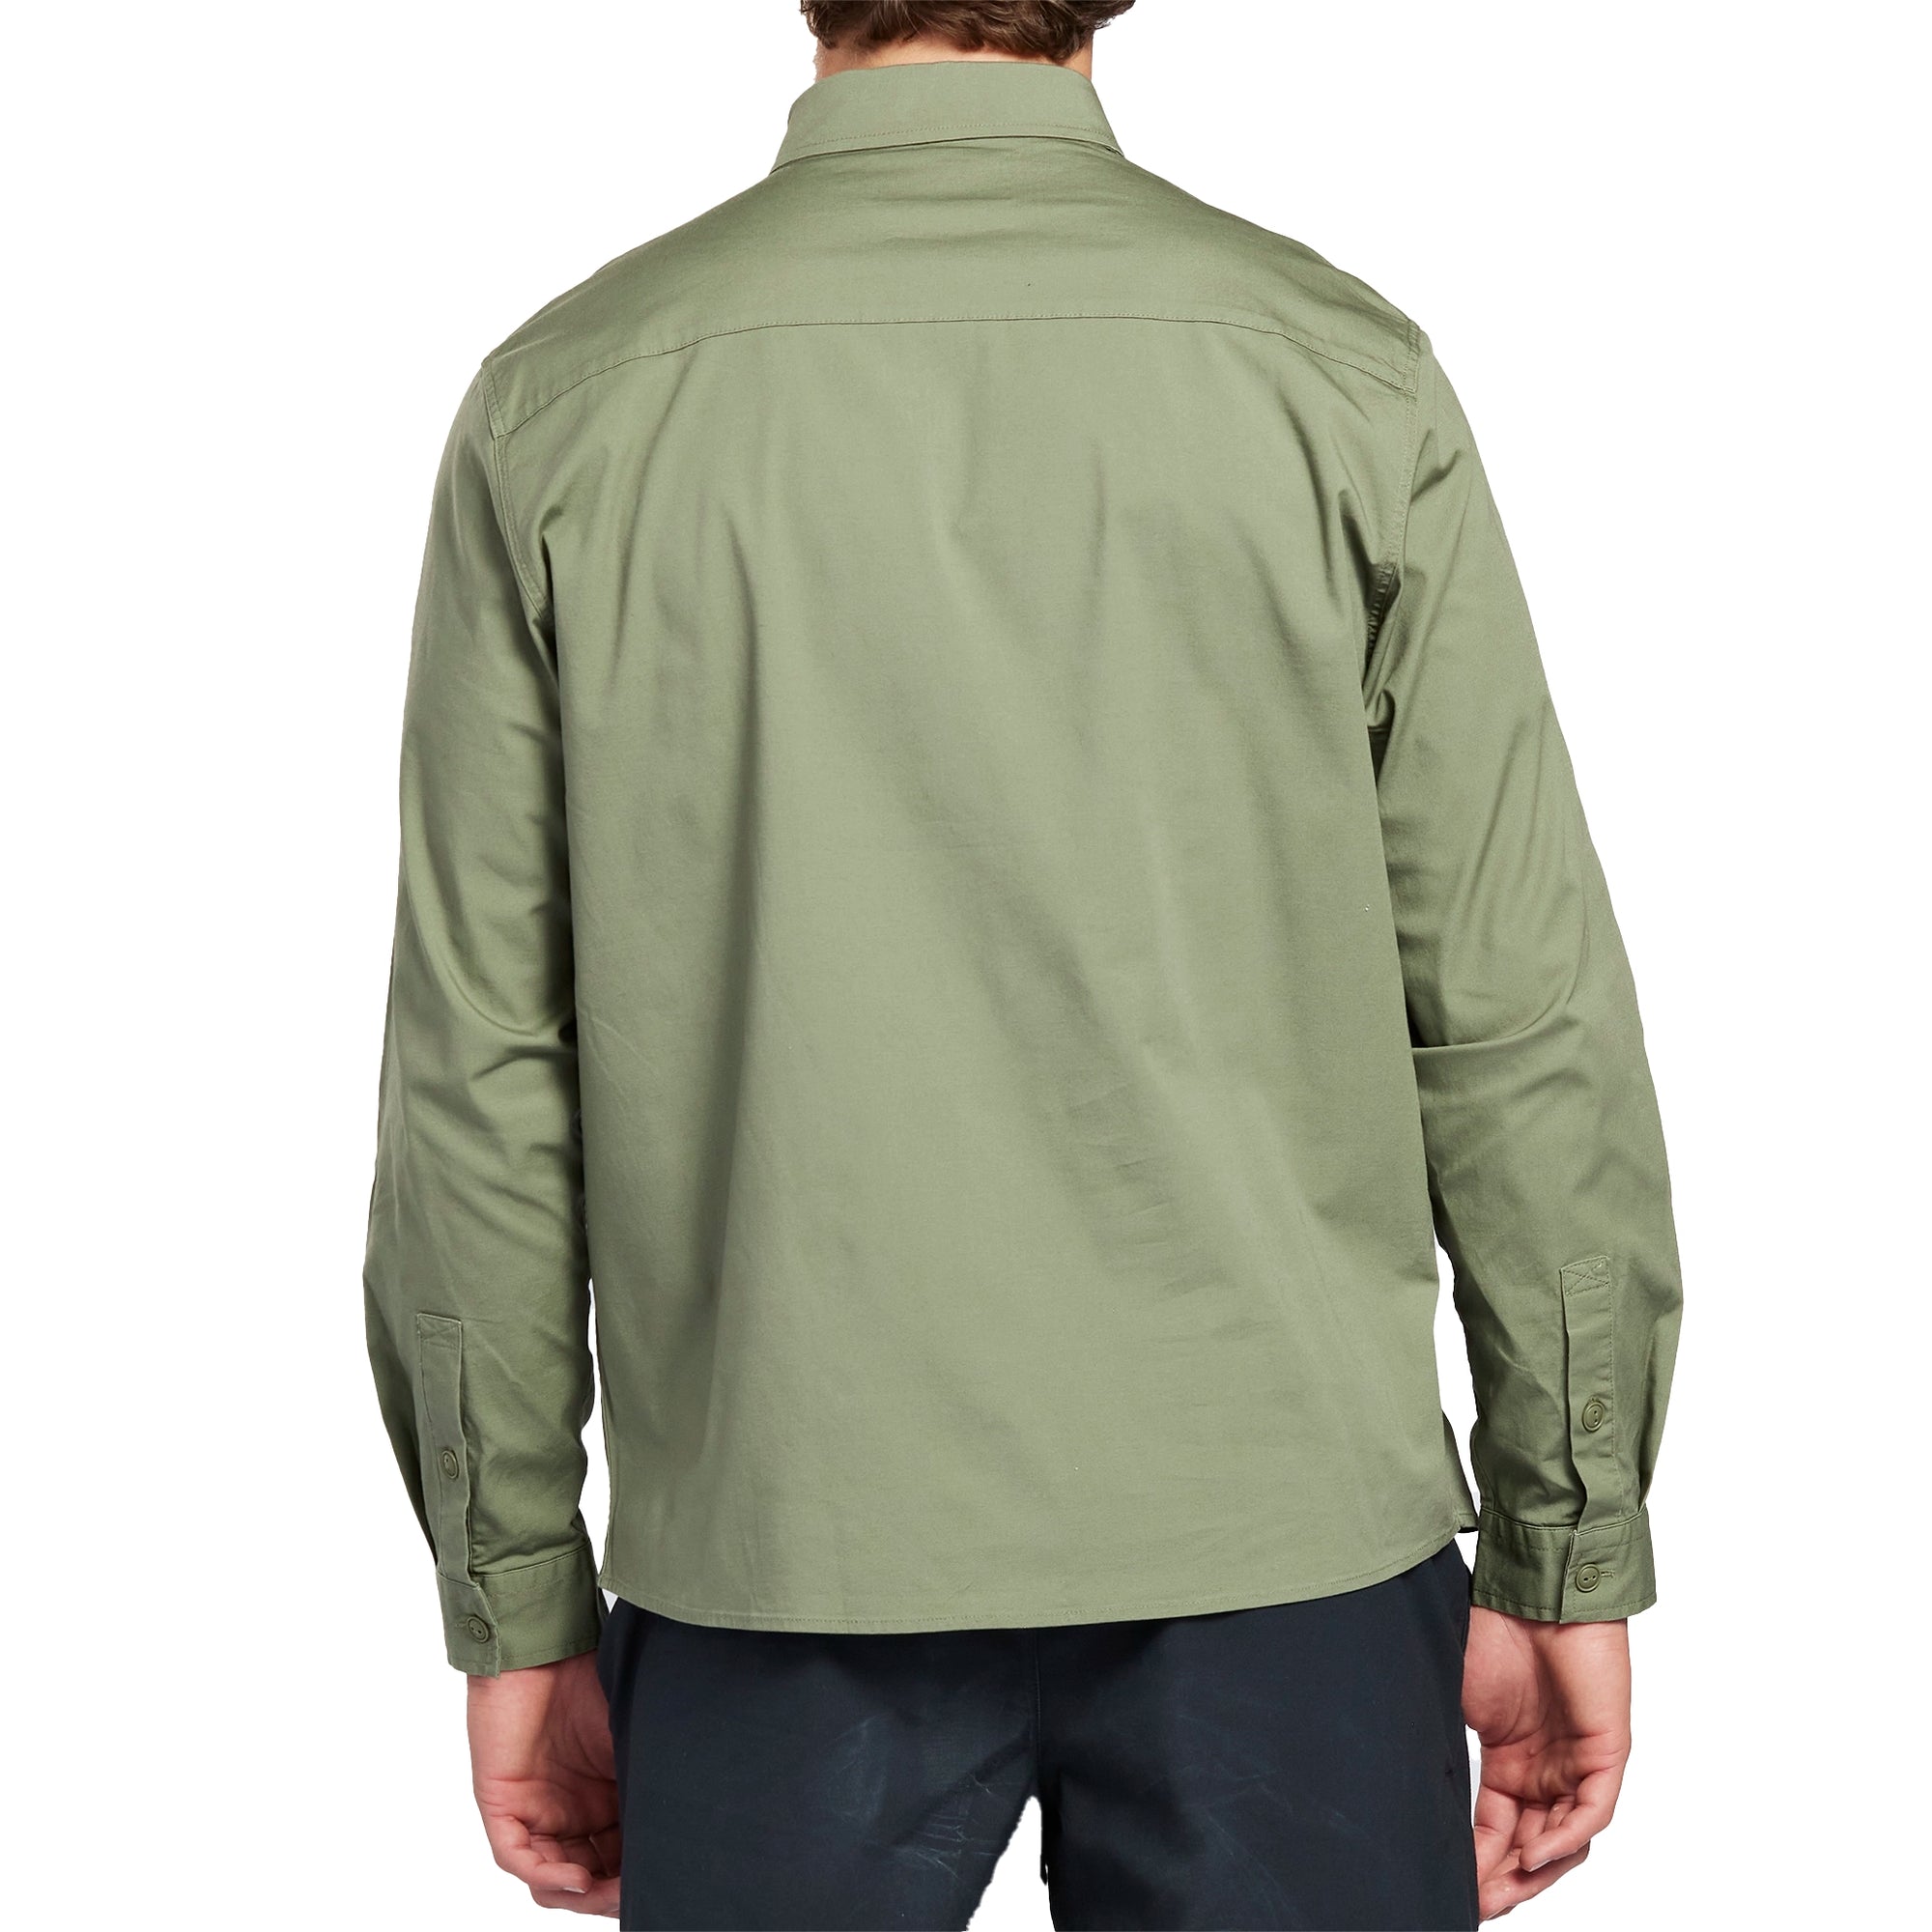 Moss green long sleeve button down canvas shirt front.